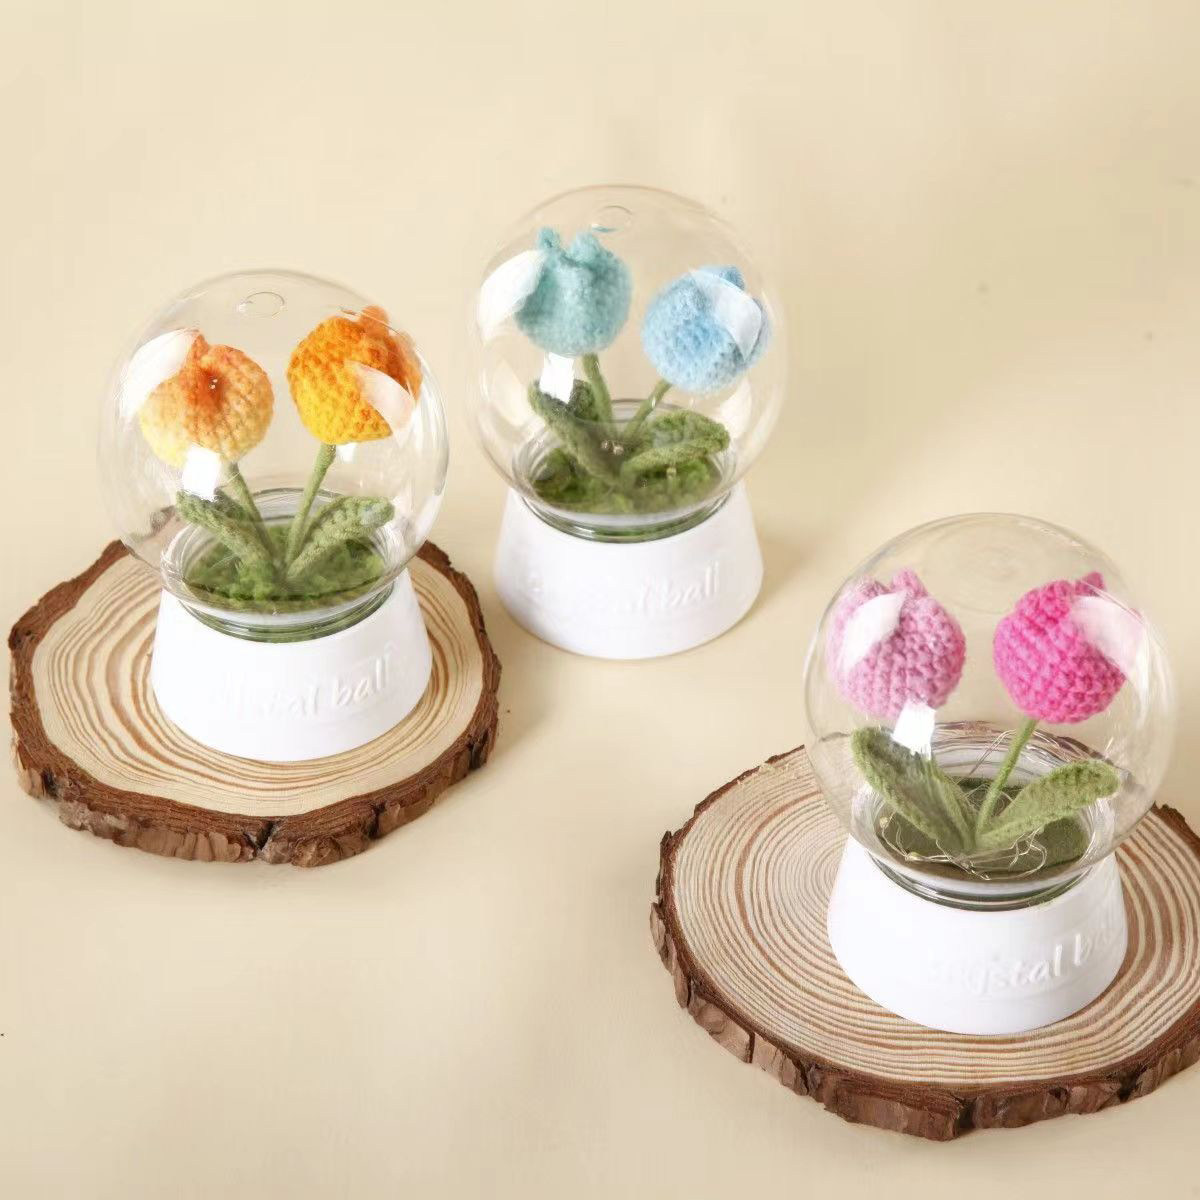 HAOBANGBEIJIA Crochet Tulips Mini Pot Night Light for Room Decor or Gifts